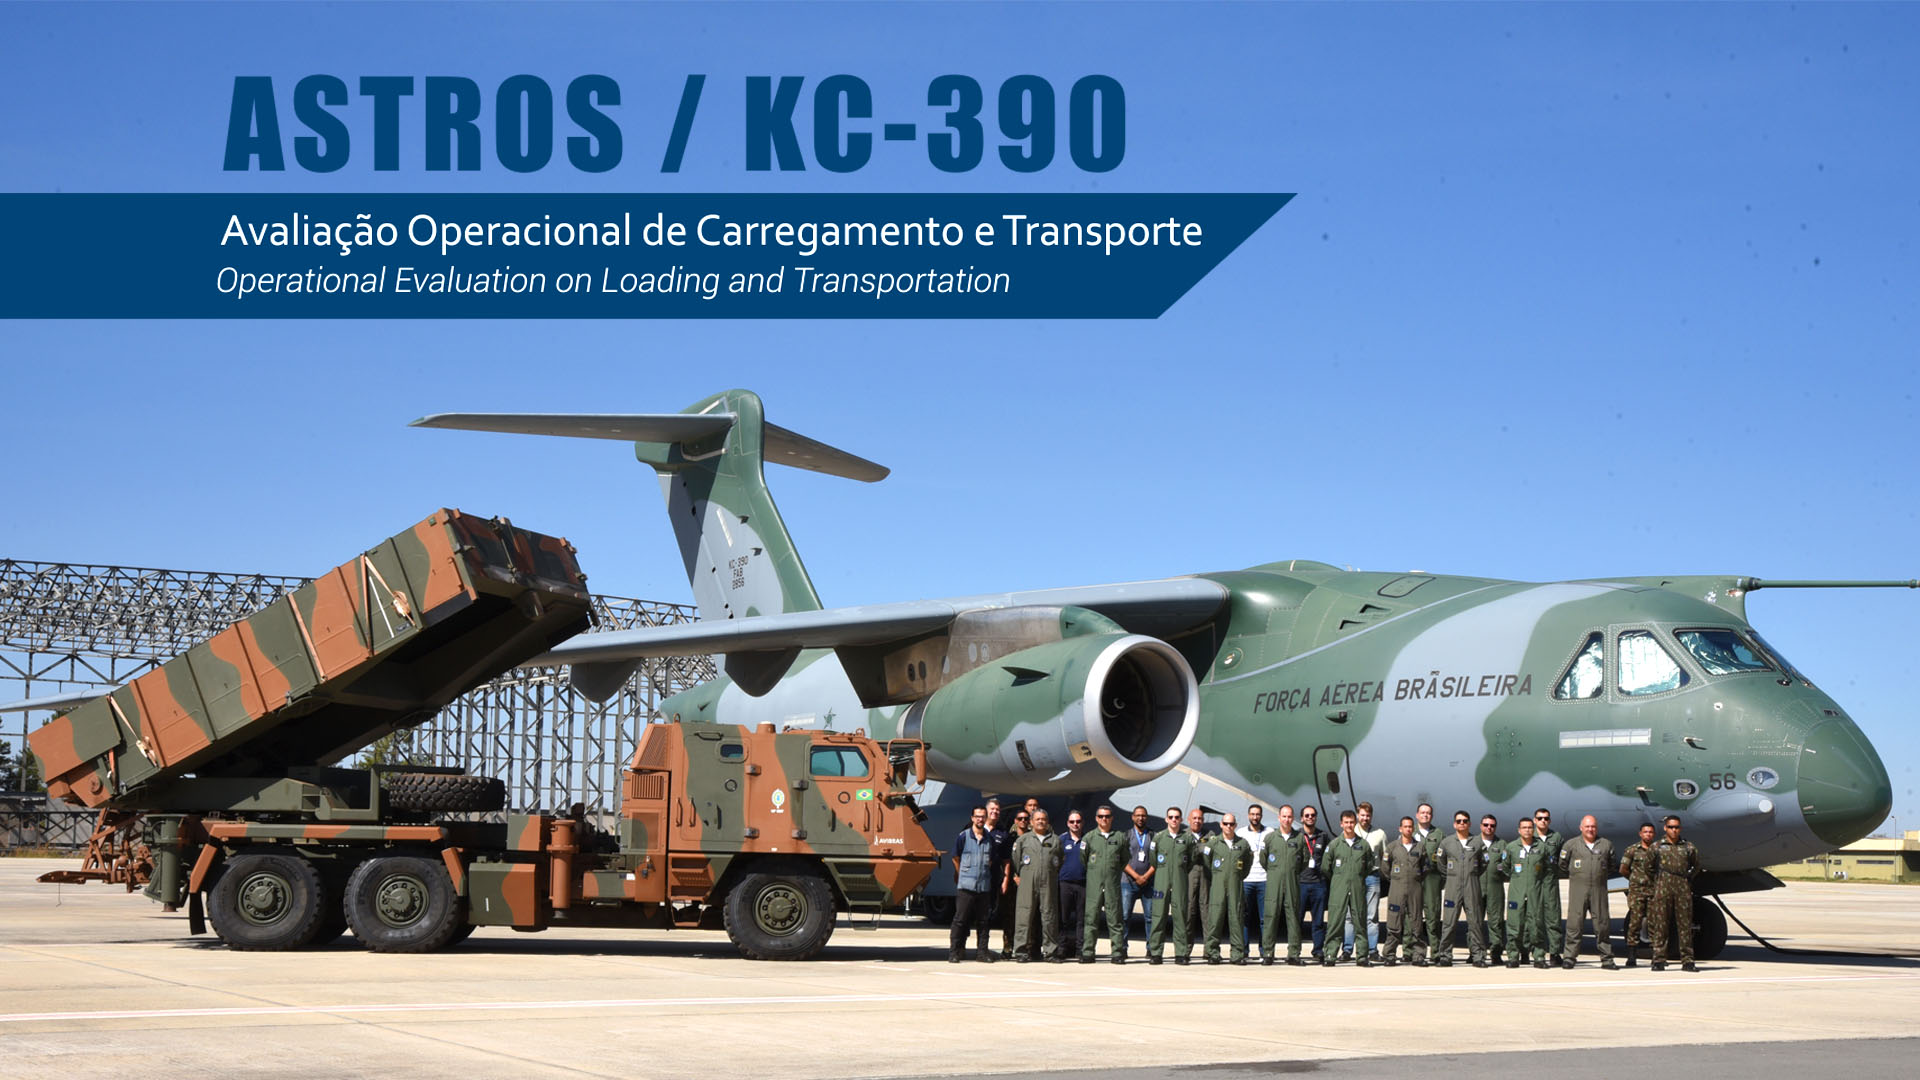 Costa apresenta novo avião KC-390 e reafirma compromisso de